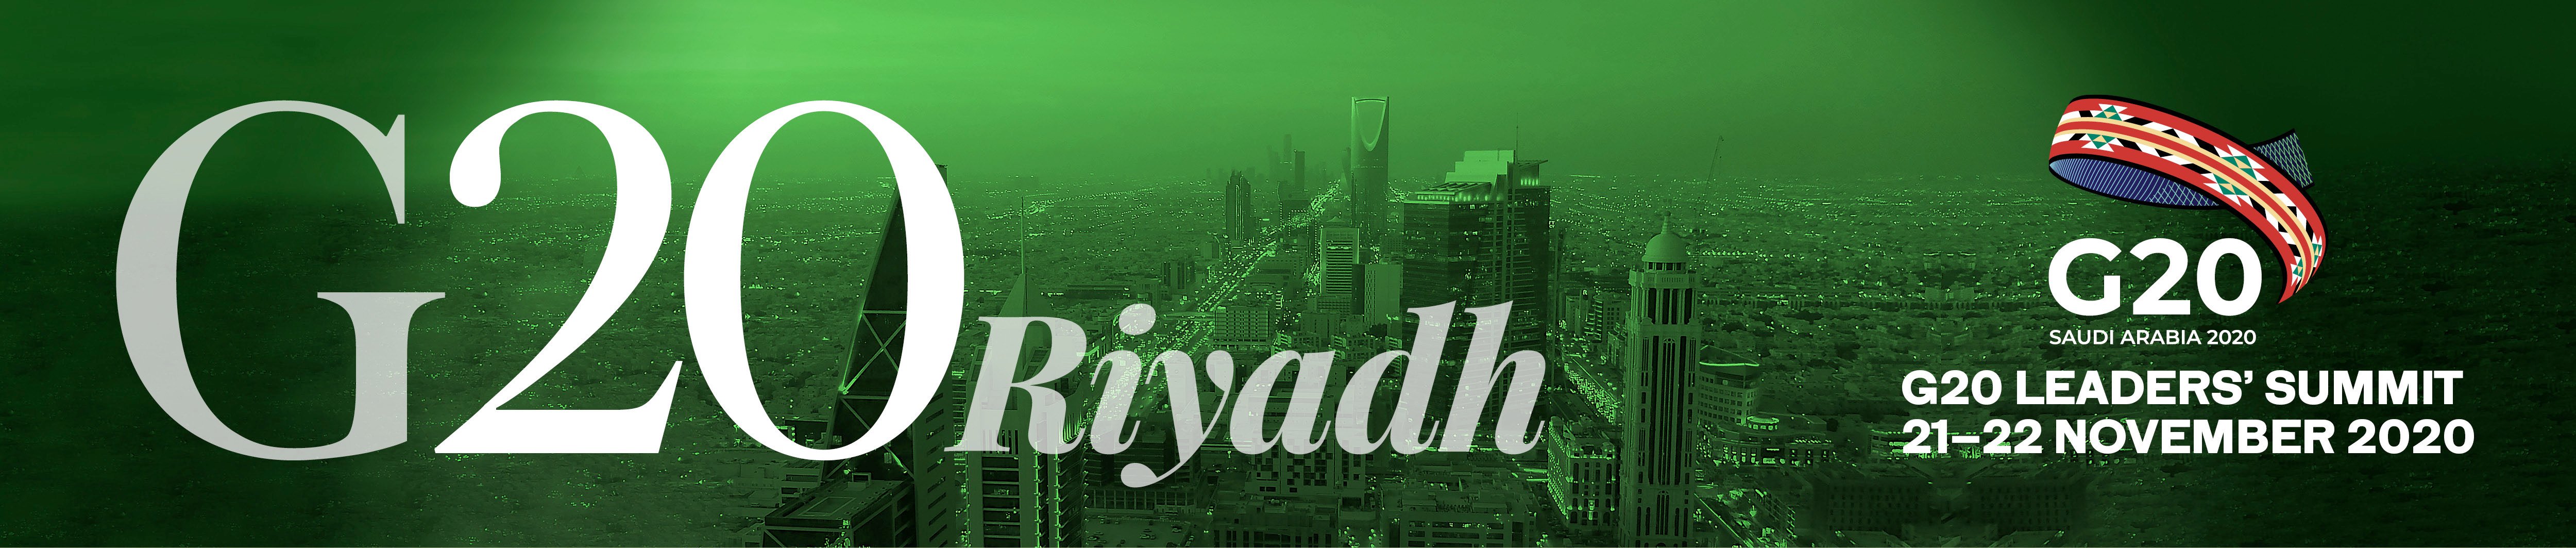 G20 Riyadh